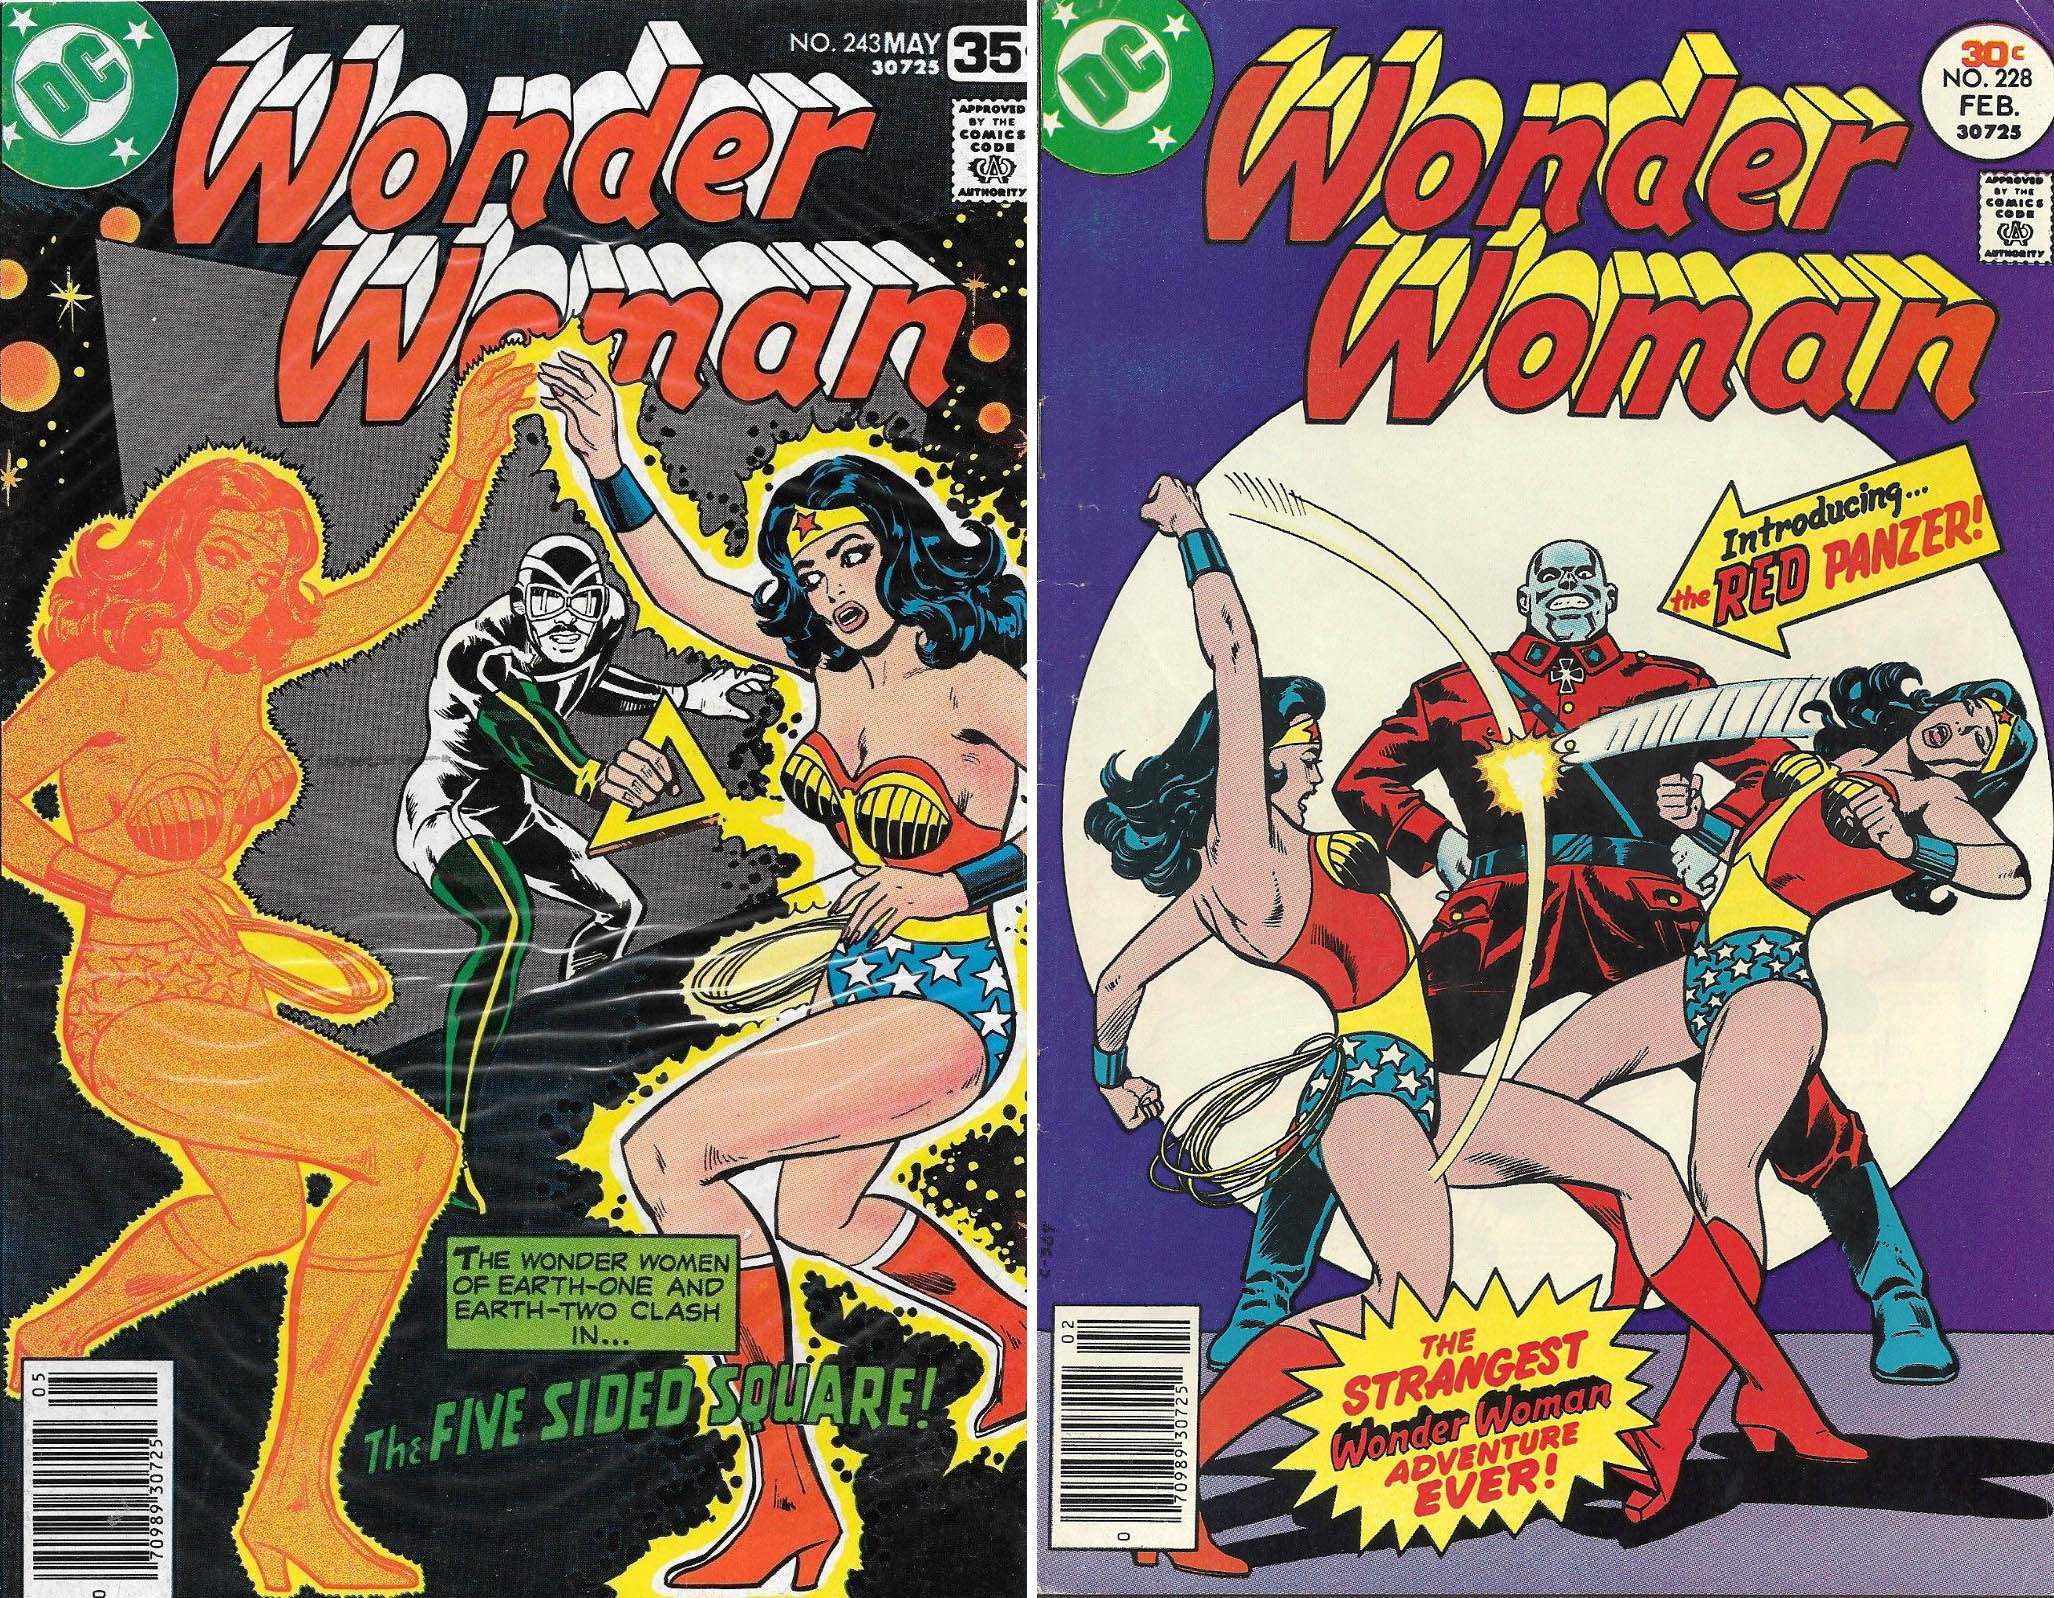 Wonder woman fetish